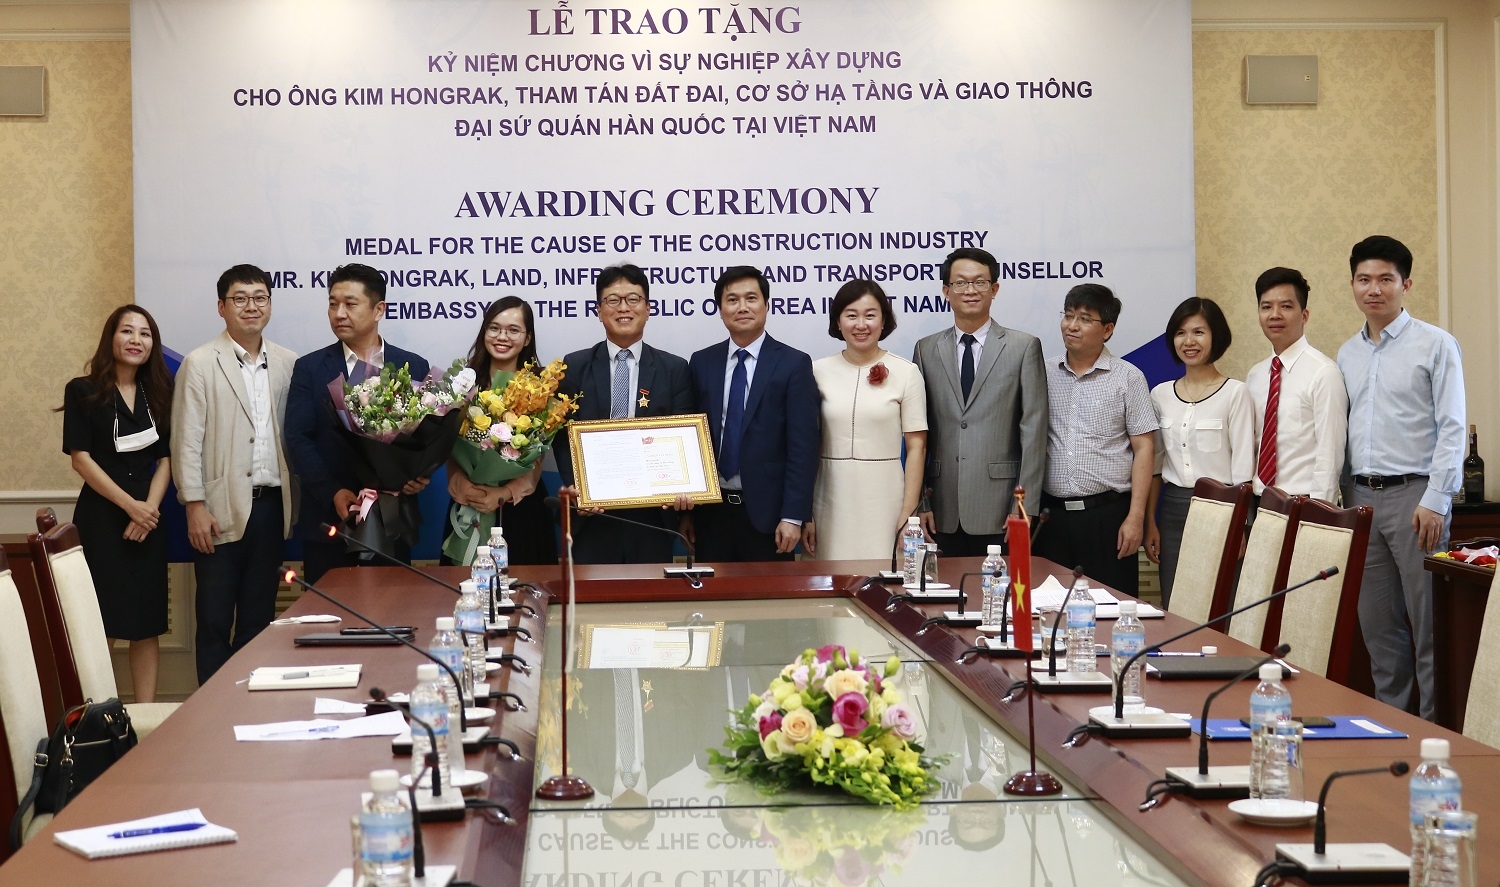 Trao tặng Kỷ niệm chương Vì sự nghiệp Xây dựng cho Tham tán Đại sứ quán Hàn Quốc tại Việt Nam